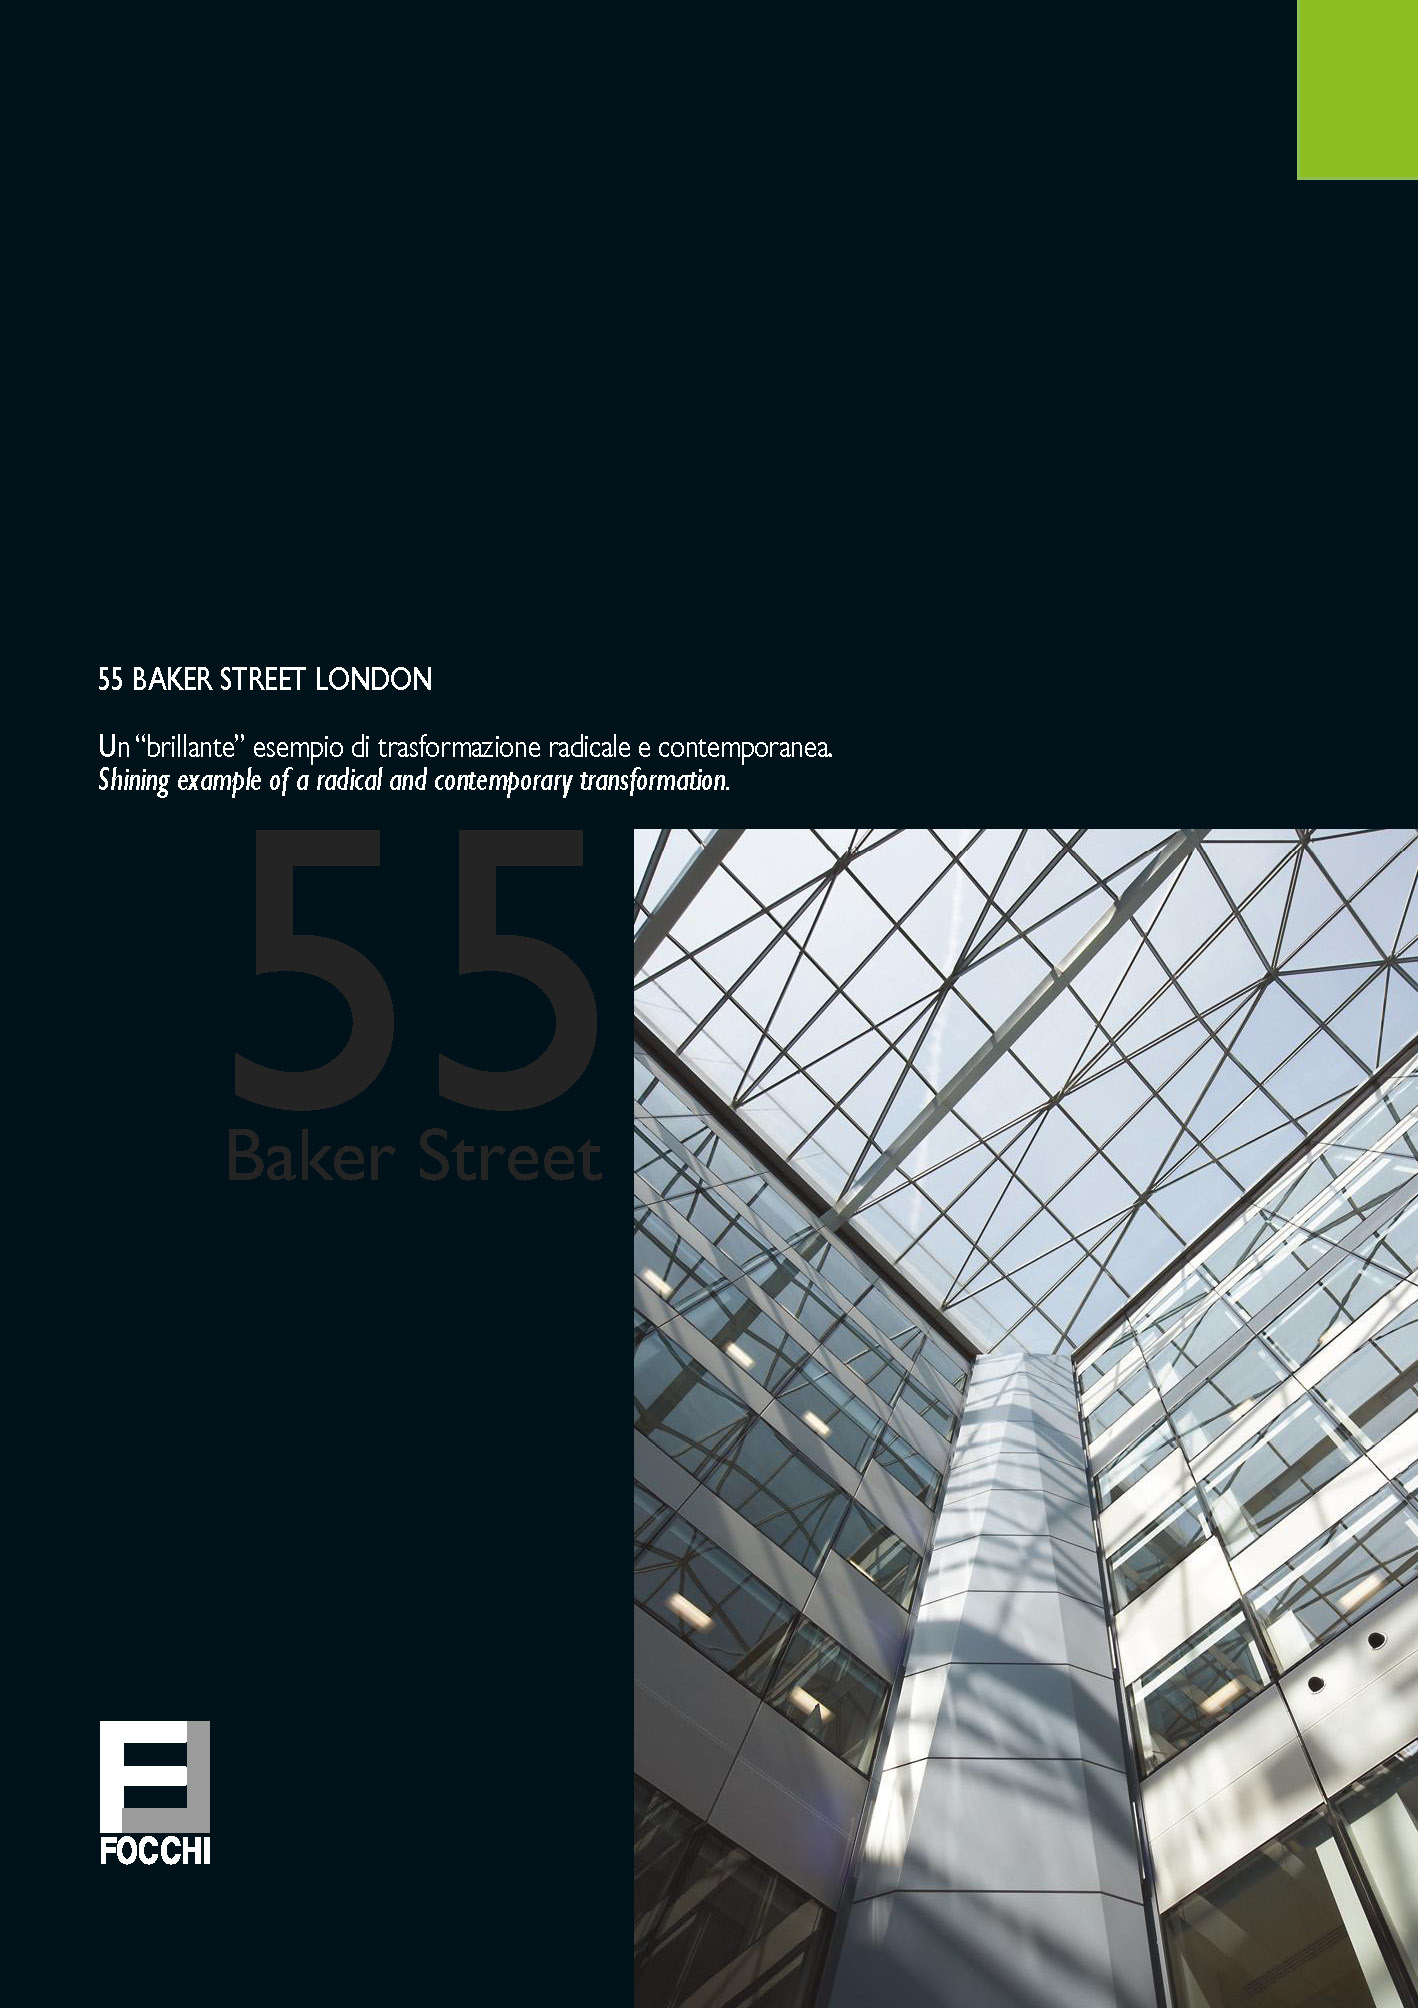 55 Baker Street